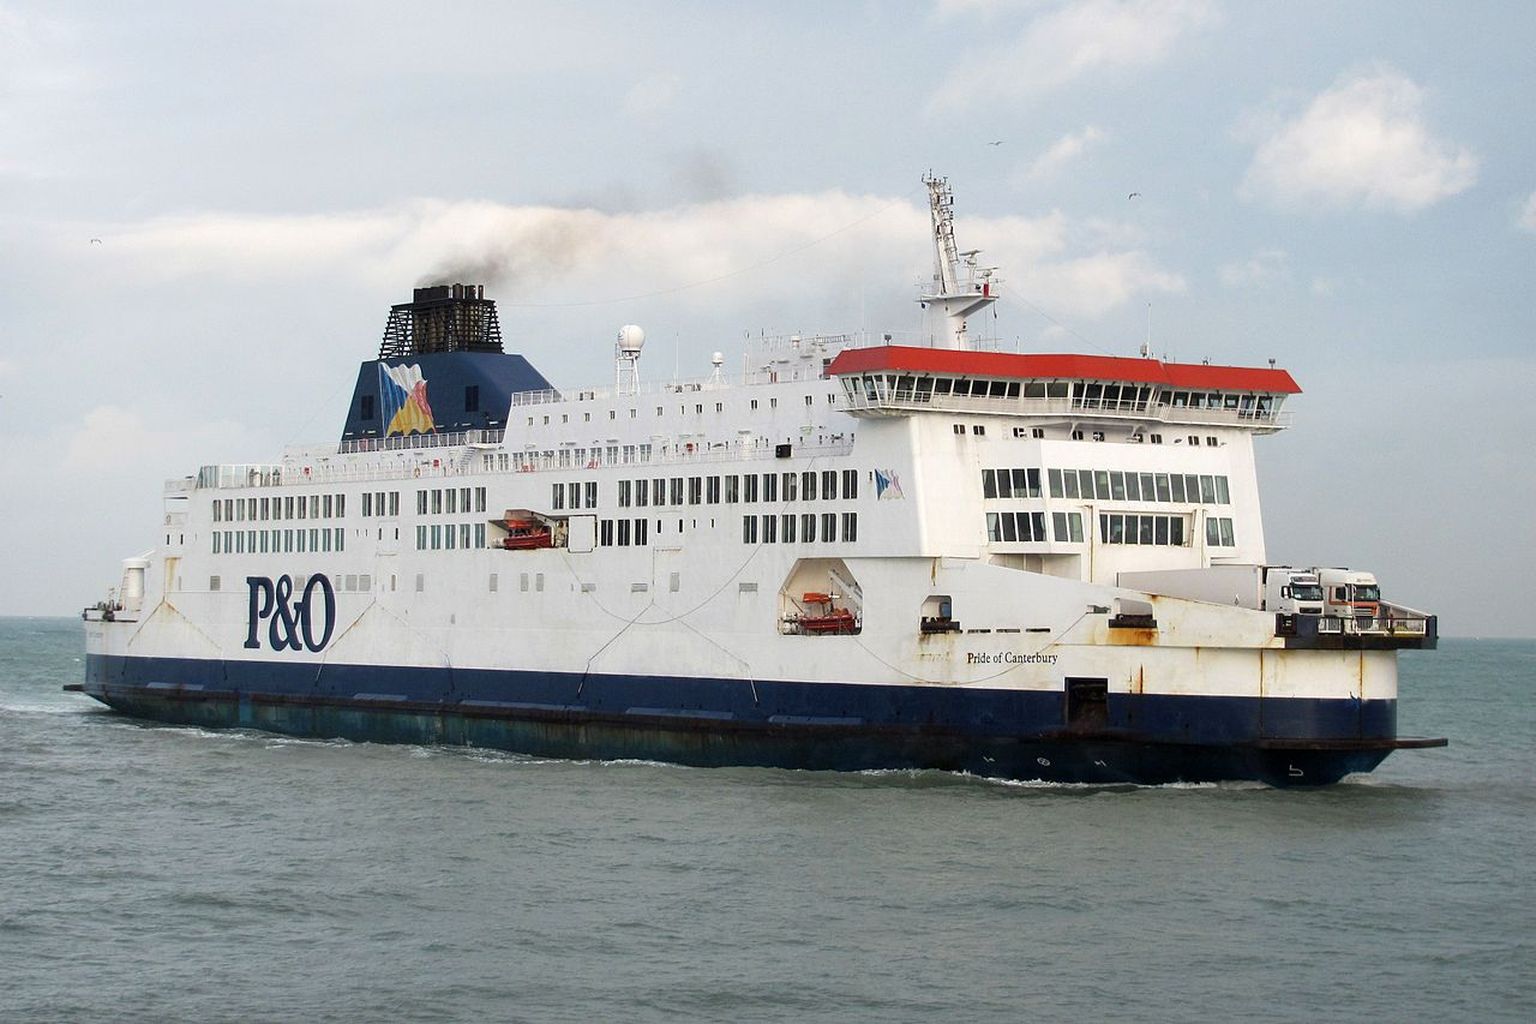 P&O Ferries laevastikku kuulub 17 alust. Pildil  P&O Pride of Canterbury Calais´i sadamasse sisenemisel.